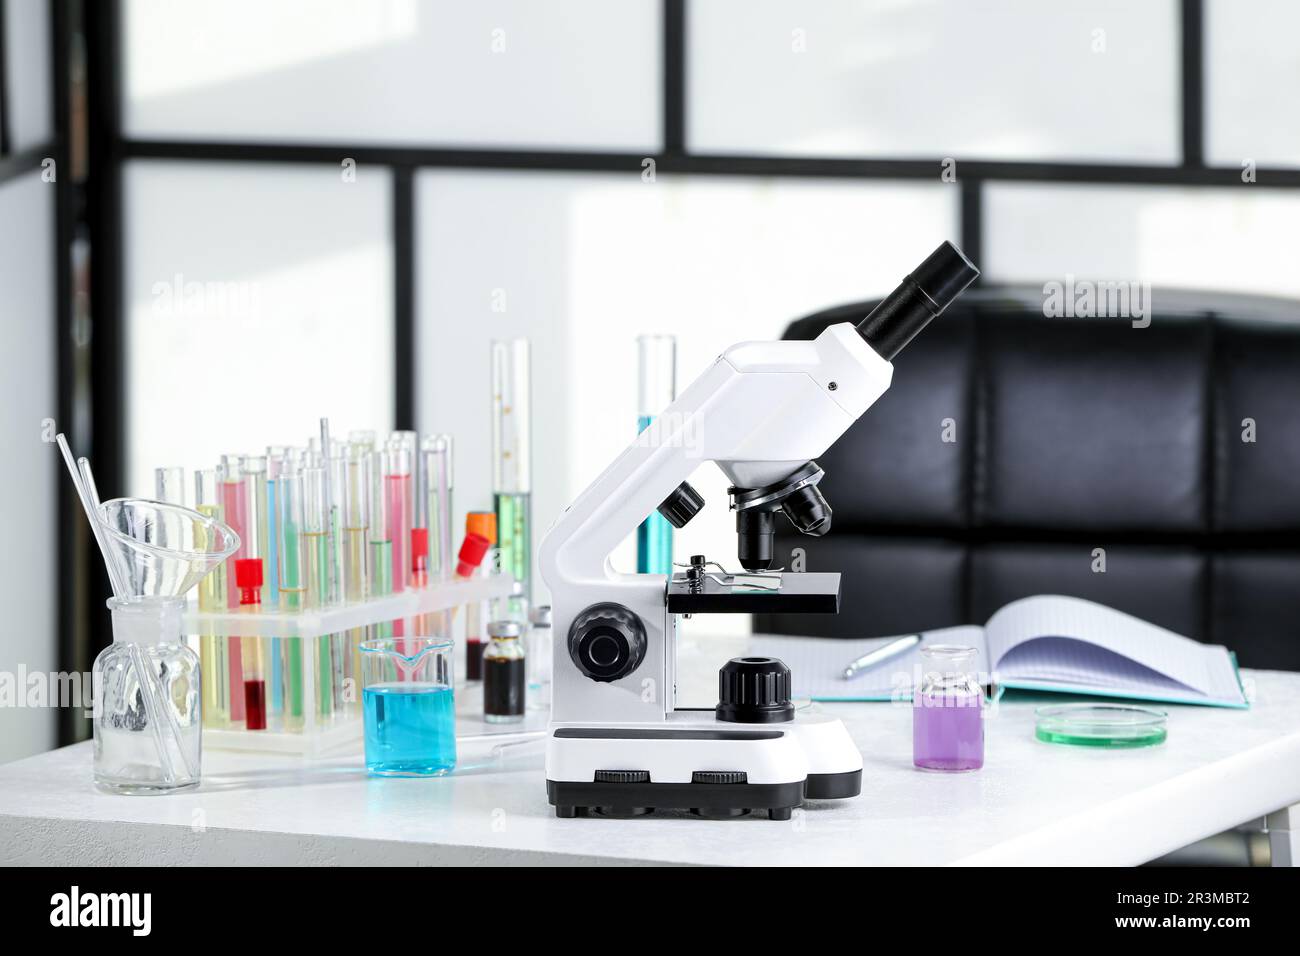 Microscopio moderno con portaobjetos de vidrio en mesa blanca en  laboratorio Fotografía de stock - Alamy